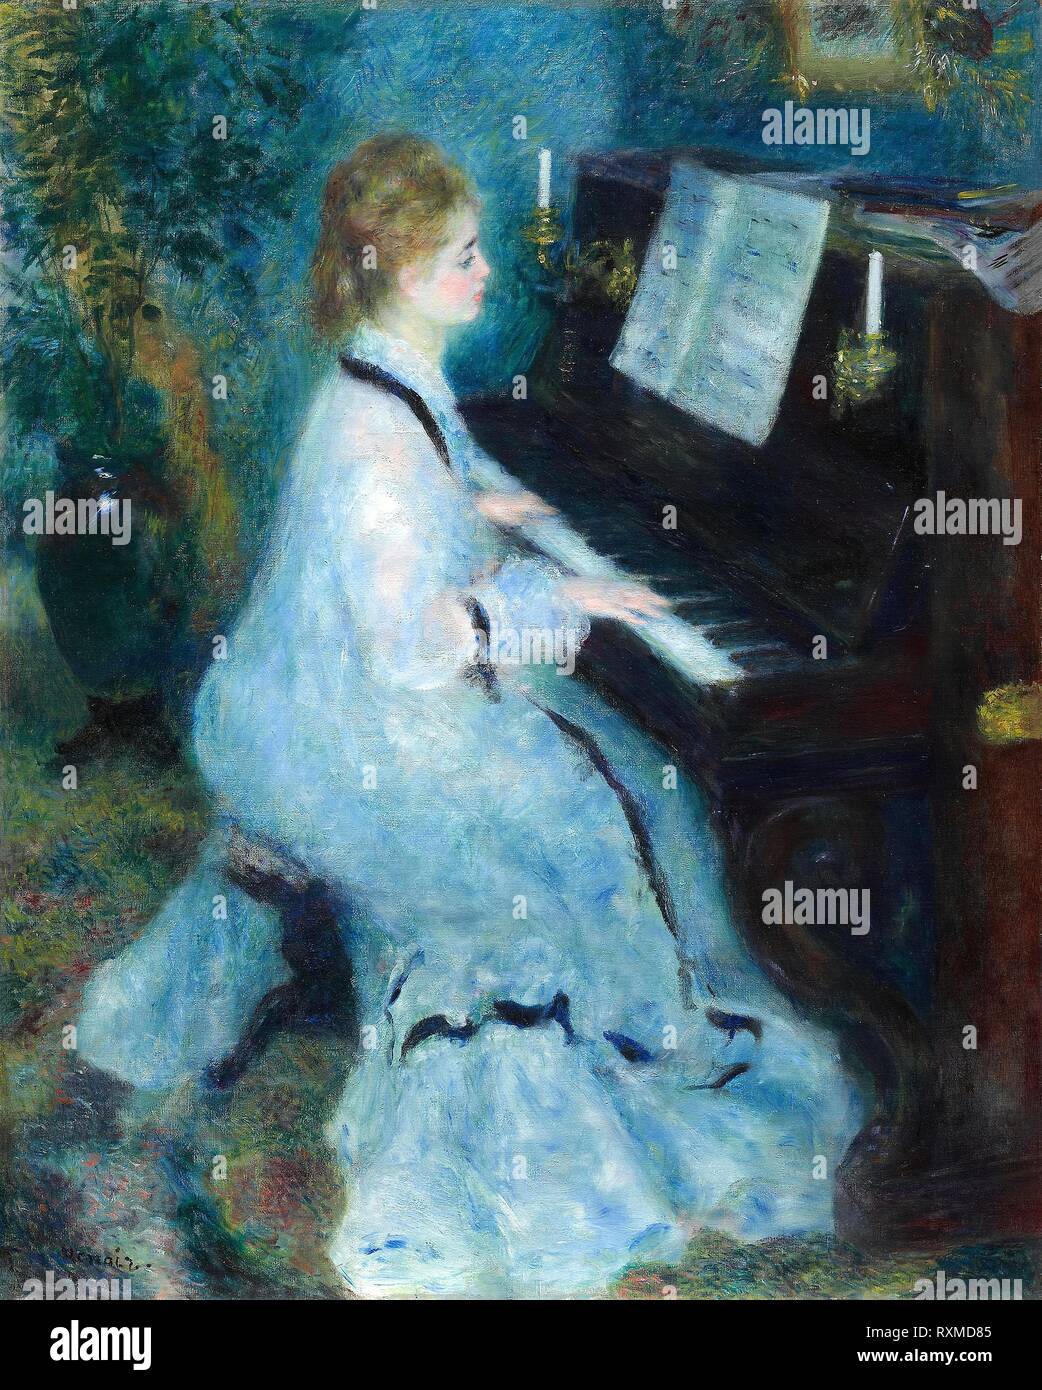 Donna al pianoforte. Pierre-Auguste Renoir; francese, 1841-1919. Data: 1875-1876. Dimensioni: 93 × 74 cm (36 9/16 × 29 1/8 in.). Olio su tela. Provenienza: Francia. Museo: Chicago Art Institute. Foto Stock